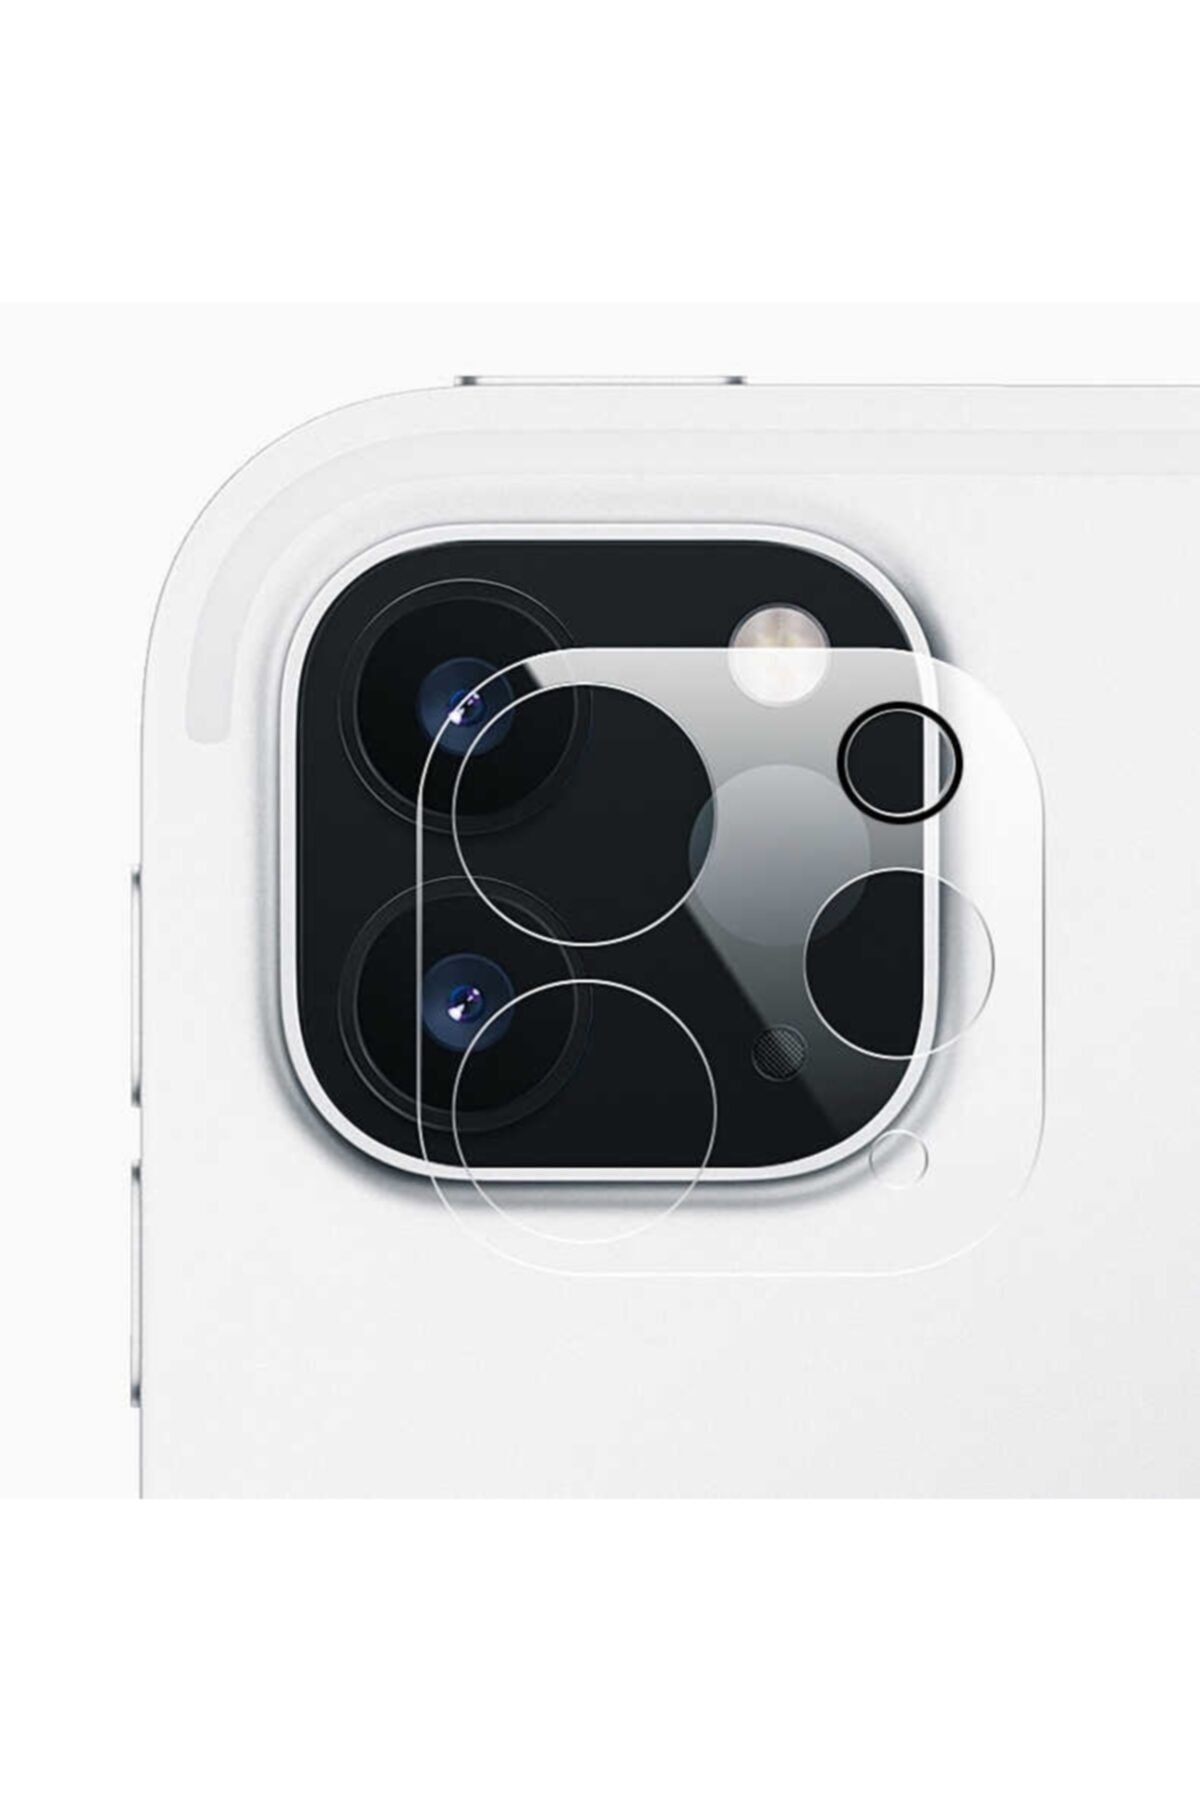 Gpack Apple Ipad Pro 11 2020 12.9 Inç Kamera Lens Koruyucu Cam